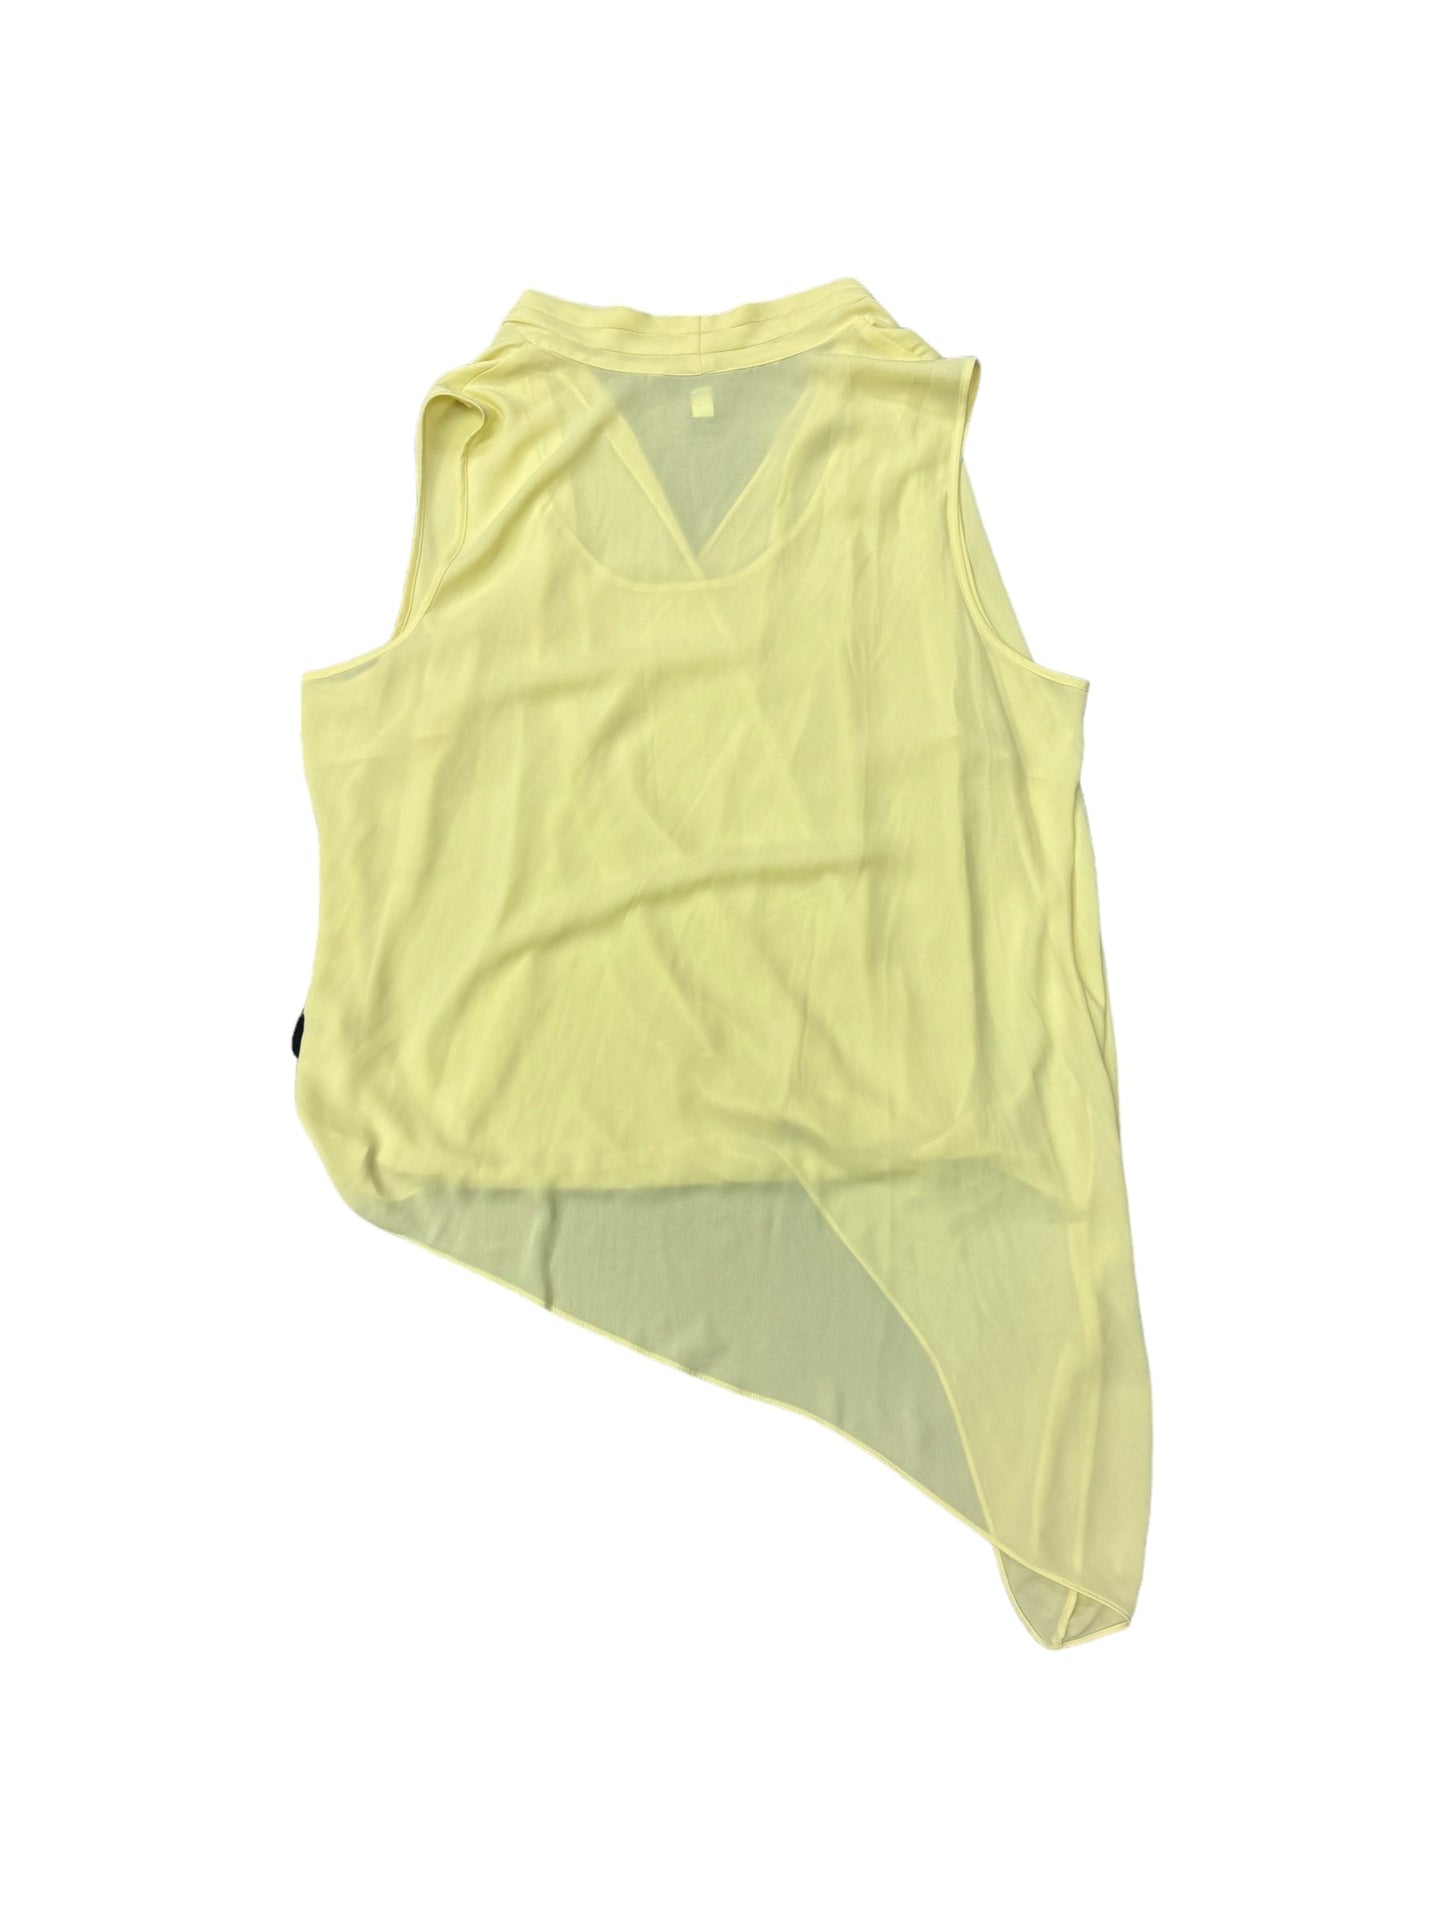 Yellow Blouse Sleeveless Alfani, Size 2x